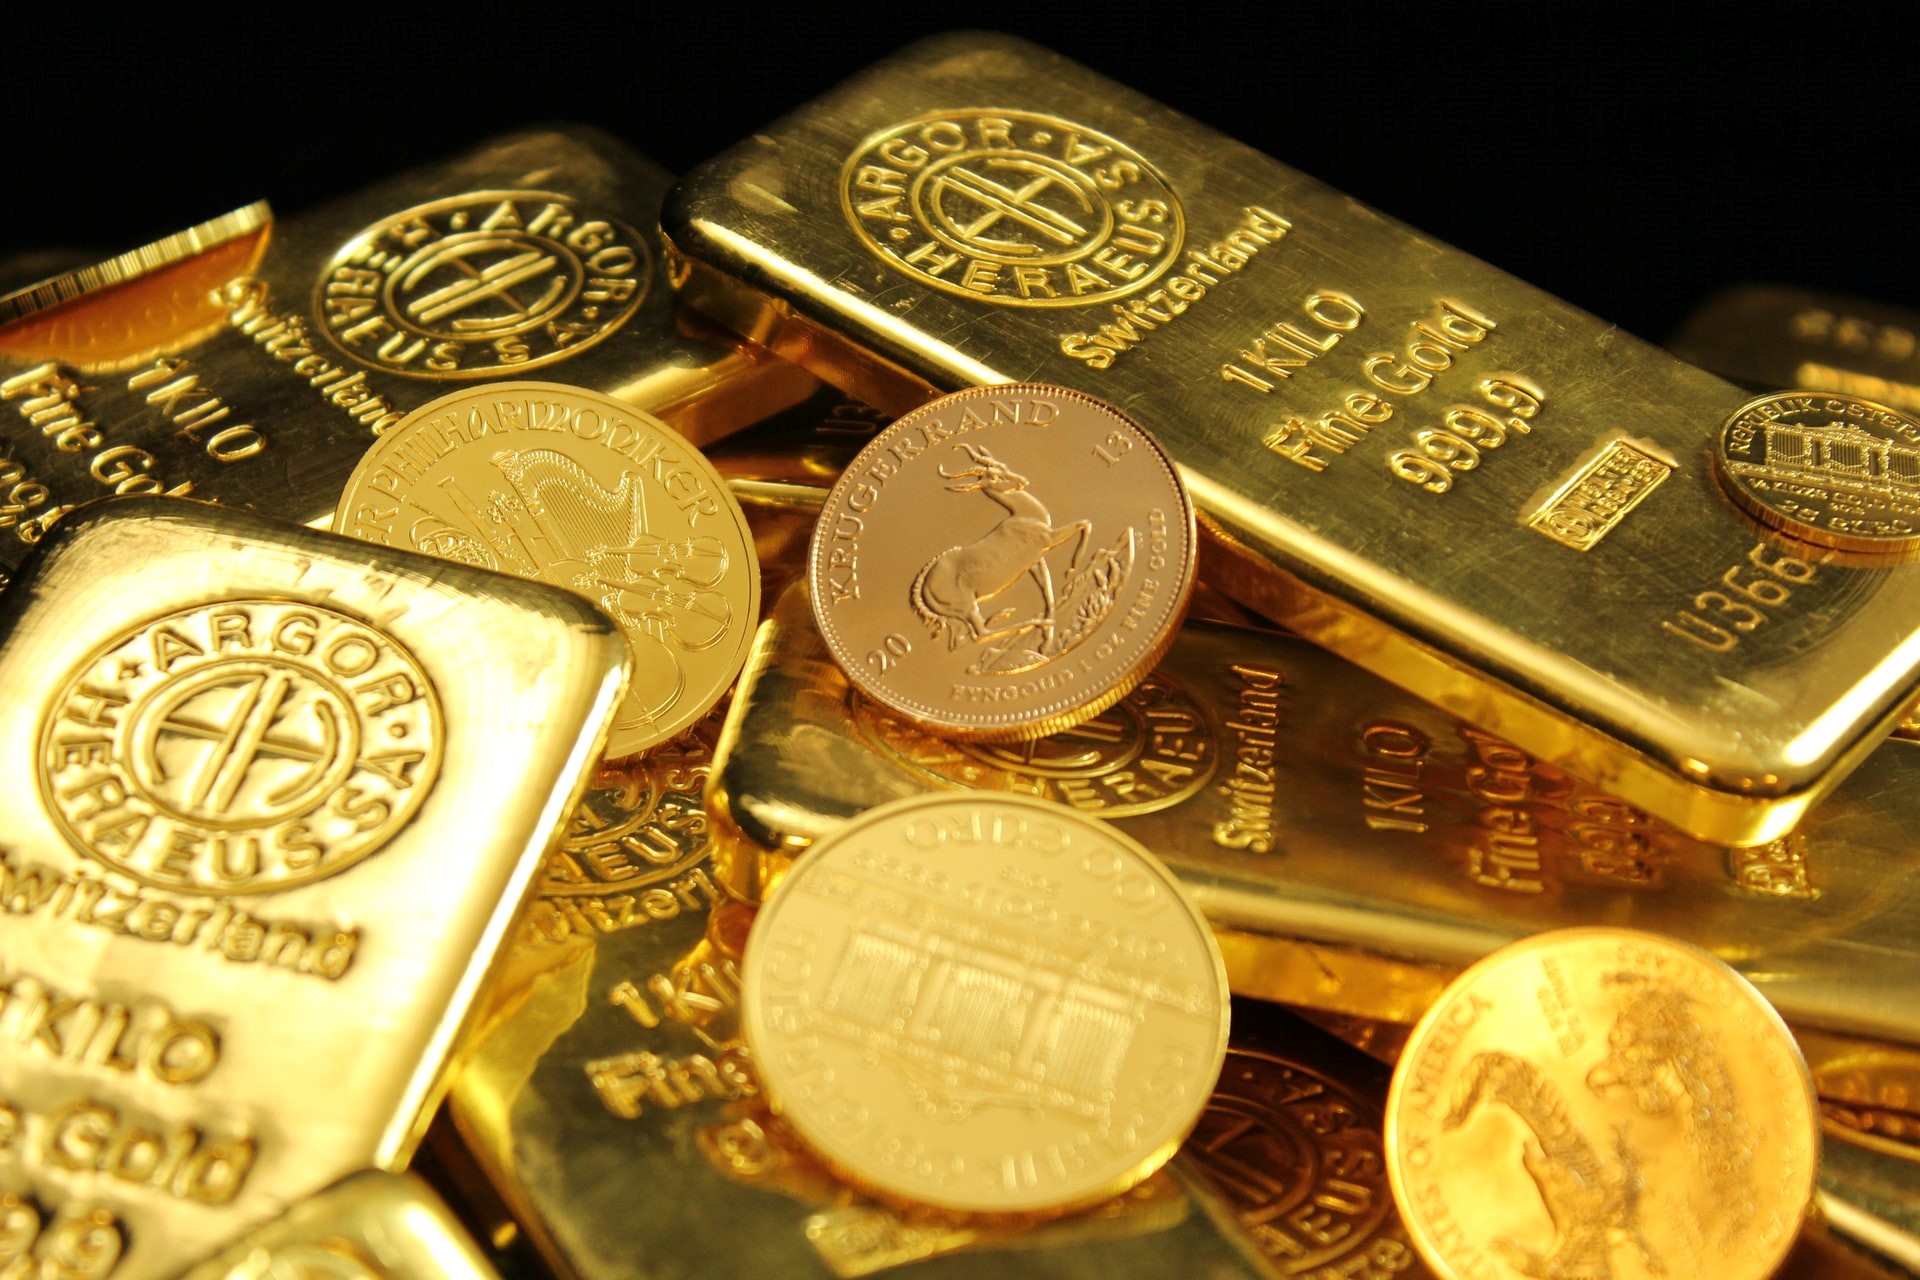 Det brittiska myntverkets börshandlade produkt Royal Mint Physical Gold ETC ser tillgångarna i guldfonden fördubblas, ja mer än fördubblats sedan årets början. Tillgångar under förvaltning har vuxit med 117,6 procent till den högsta sedan den börshandlade råvarans lansering 2020